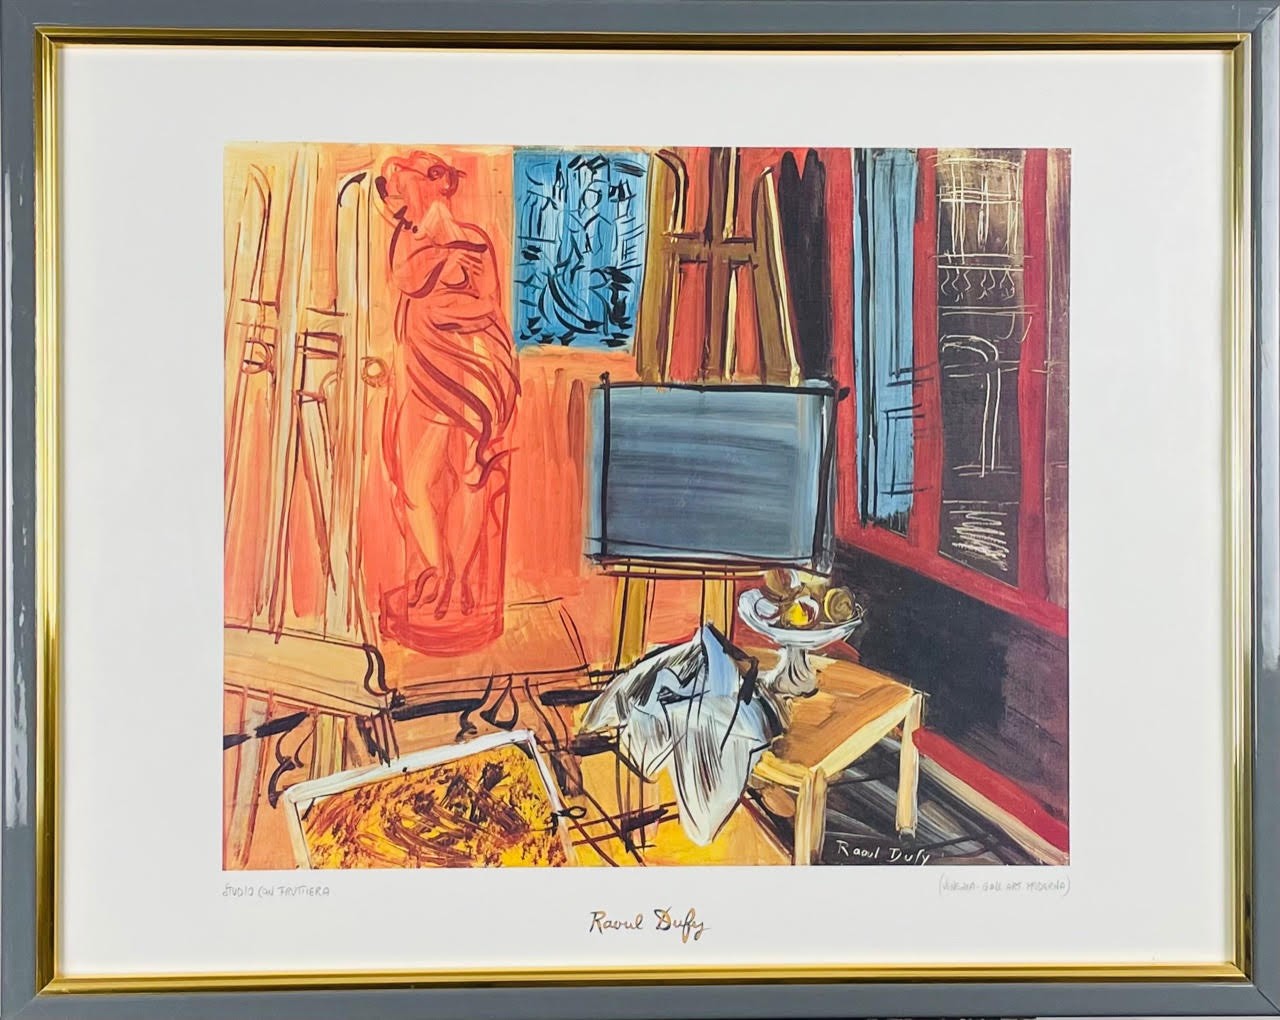 Raoul Dufy, L’atelier de l’artiste